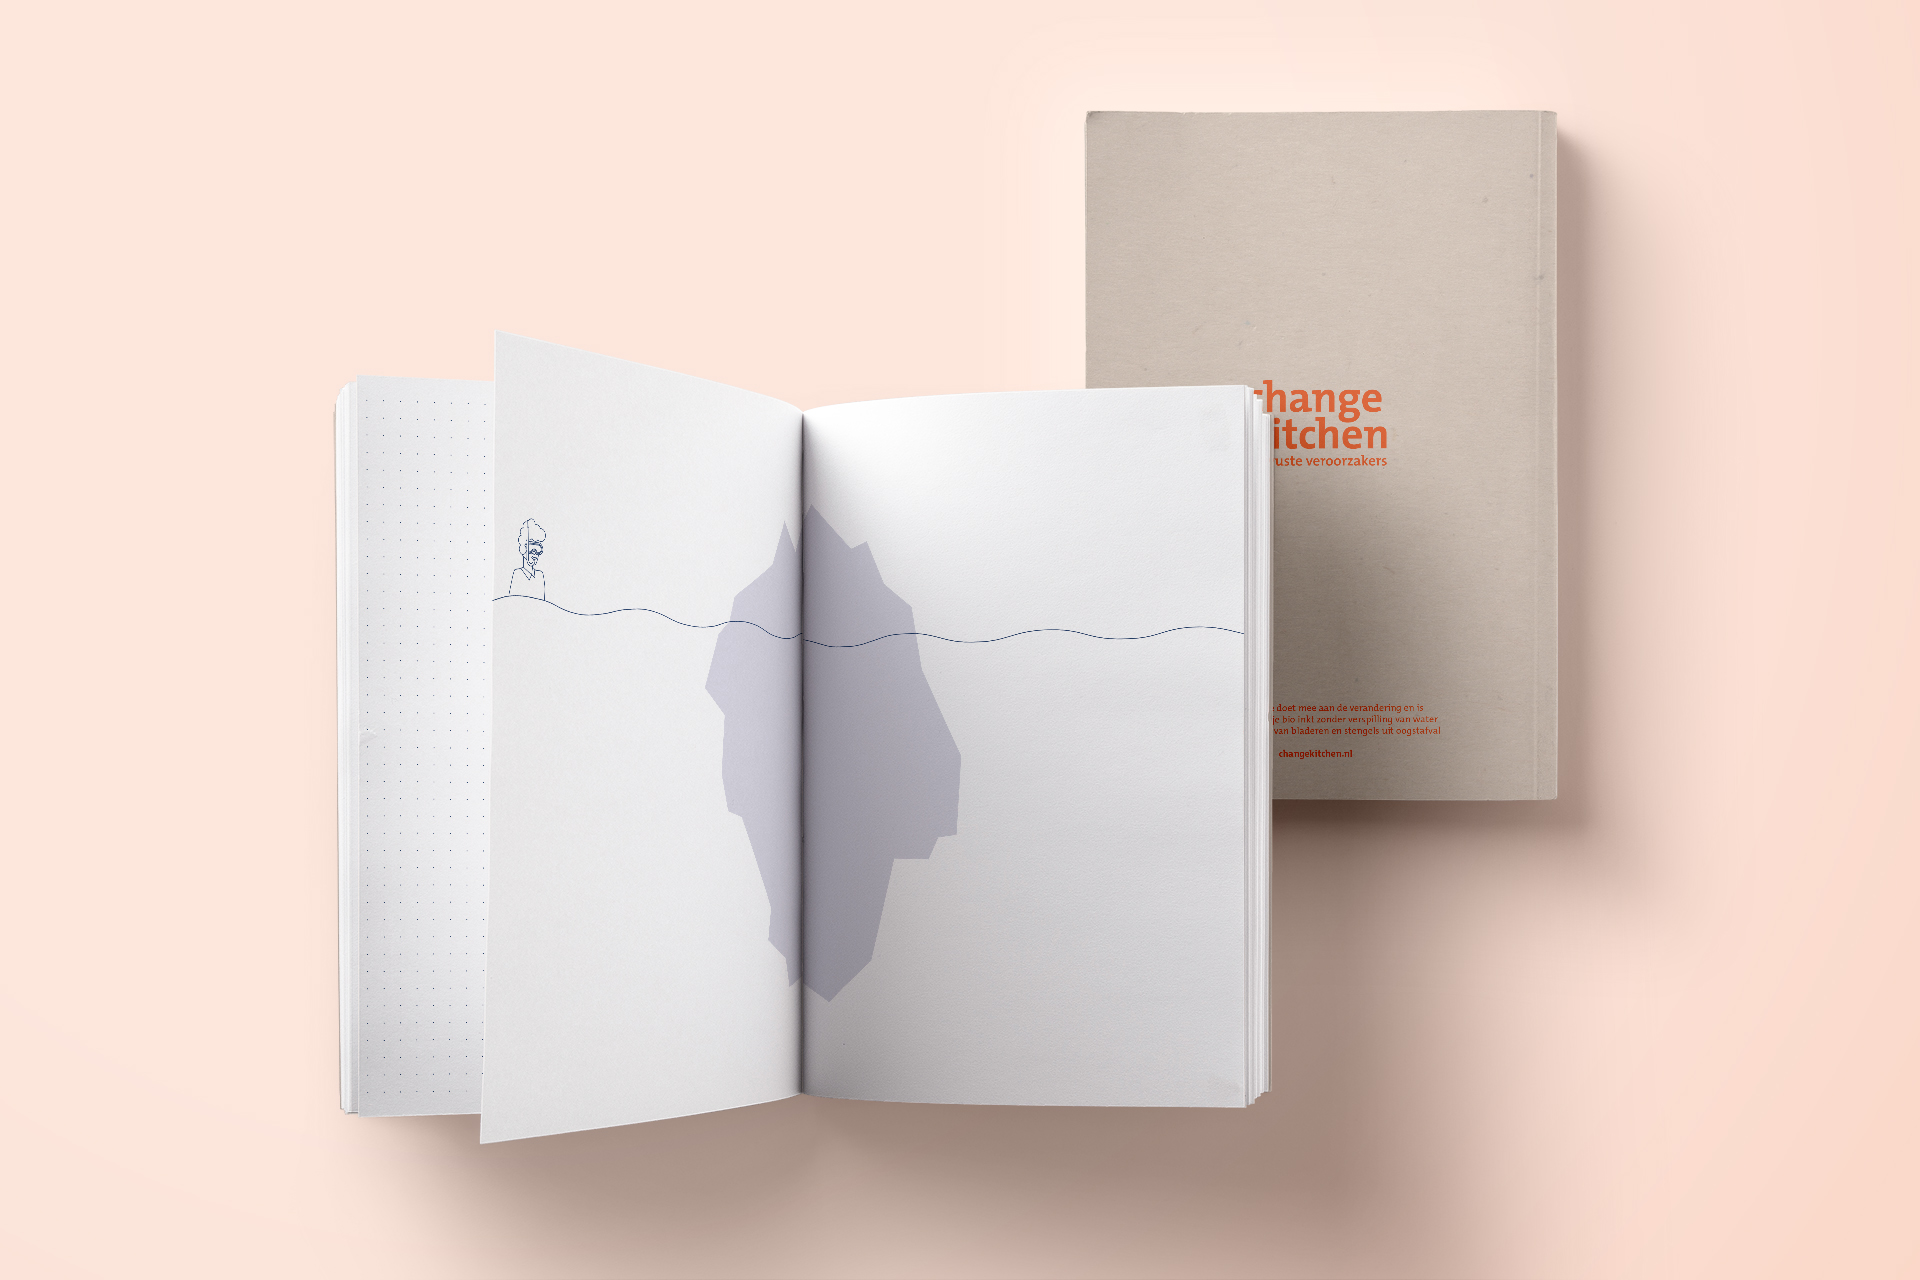 Changekitchen open notitieboekje op een oranje achtergrond